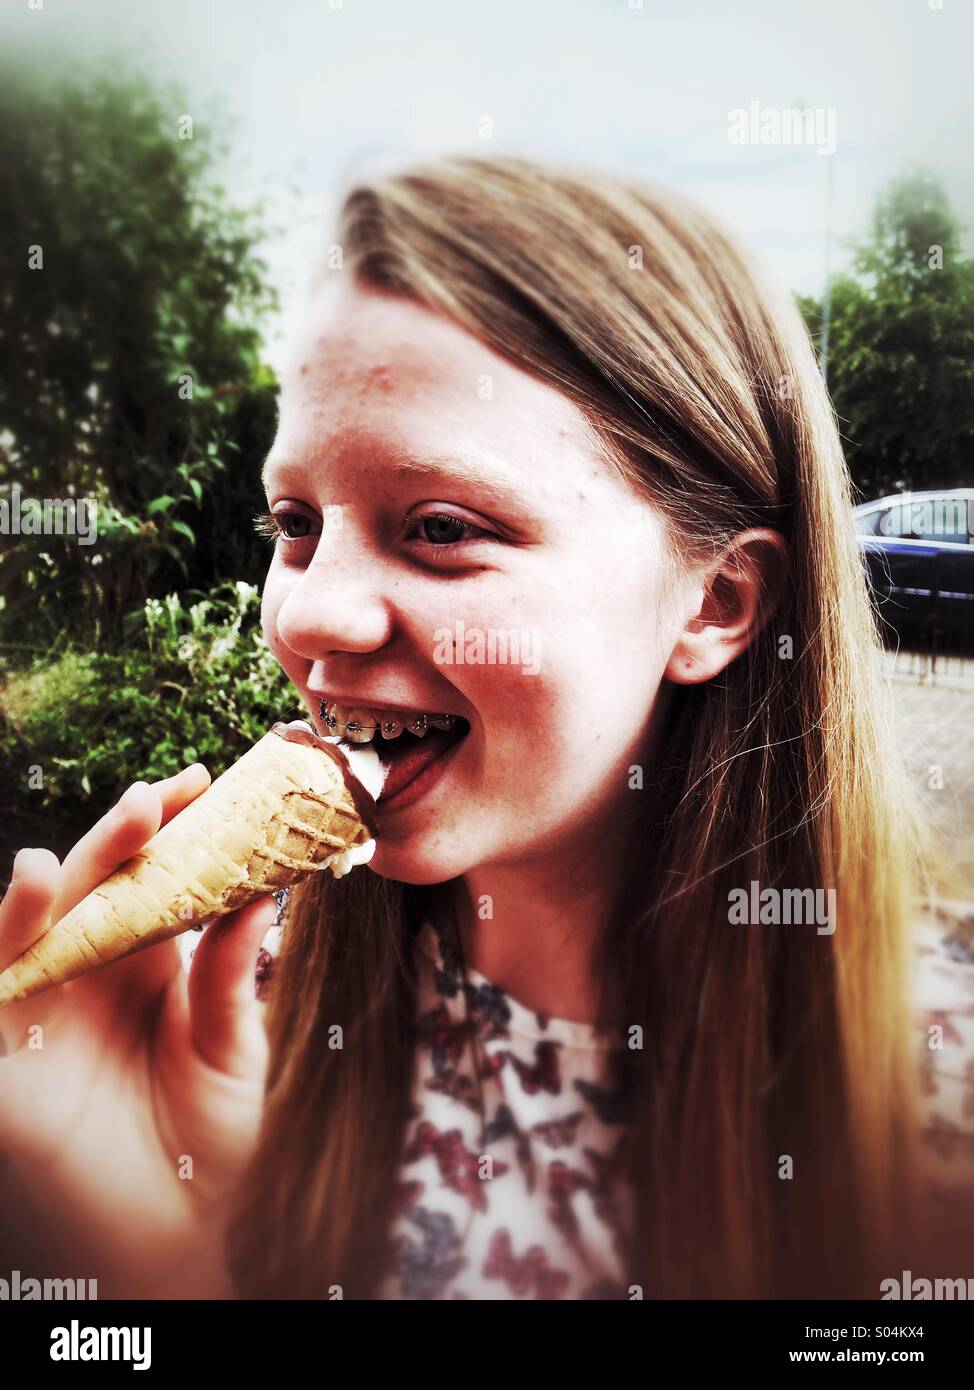 Ein junges Mädchen ein Eis essen Stockfoto